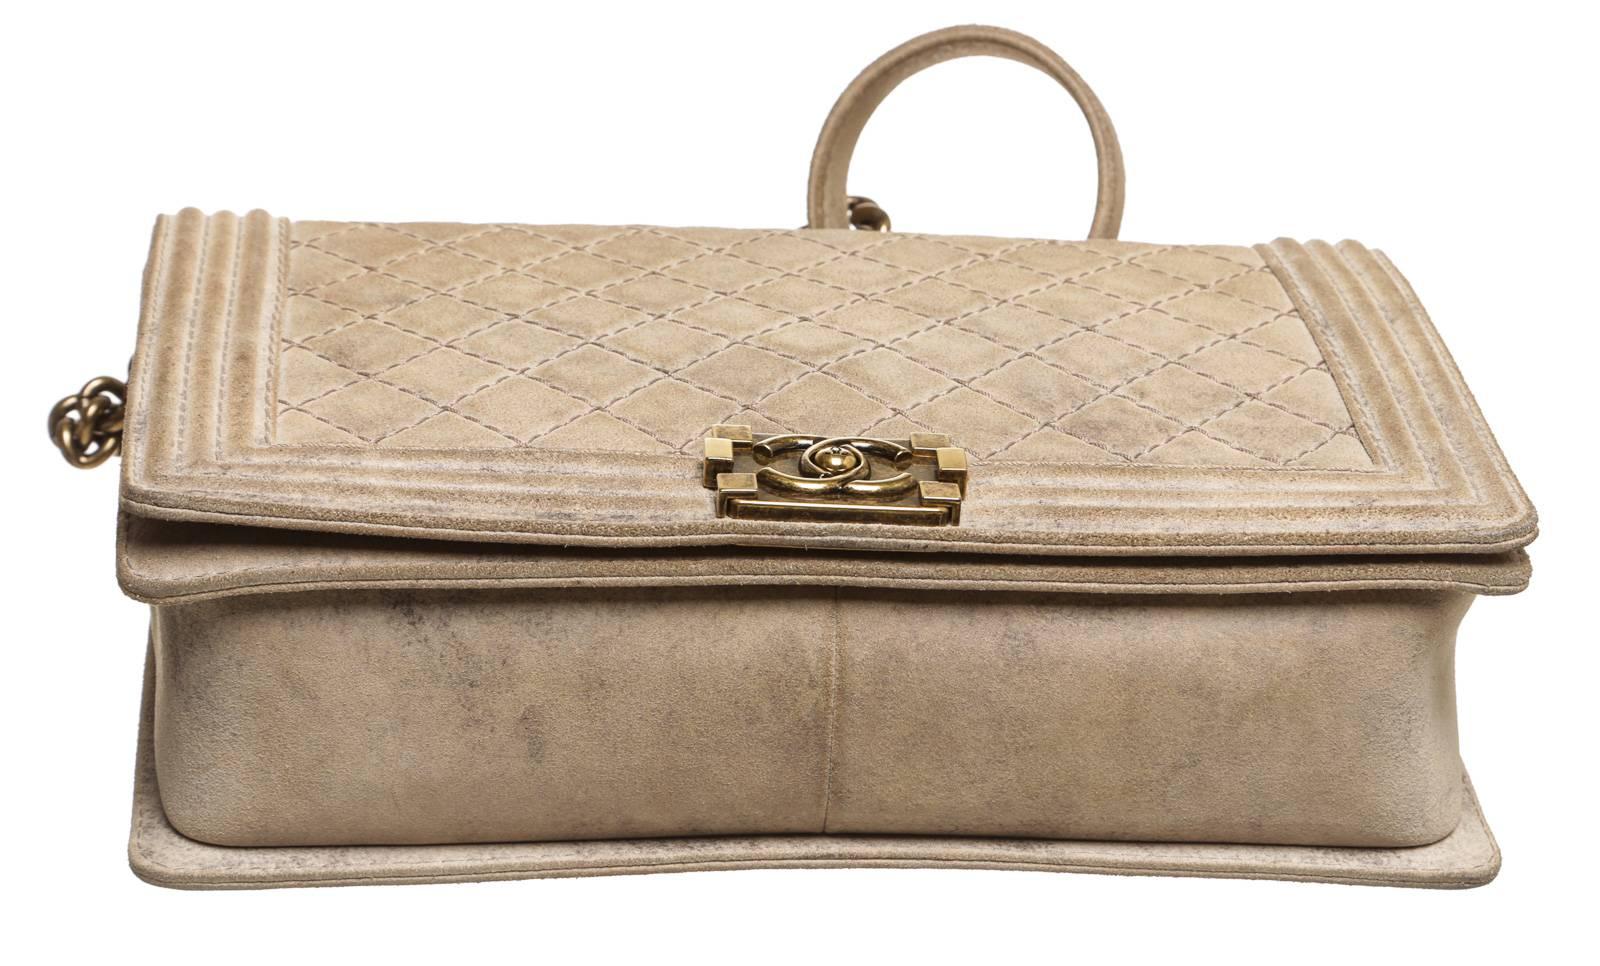 Chanel Beige Distressed Leather Large Boy Bag Handbag For Sale 1